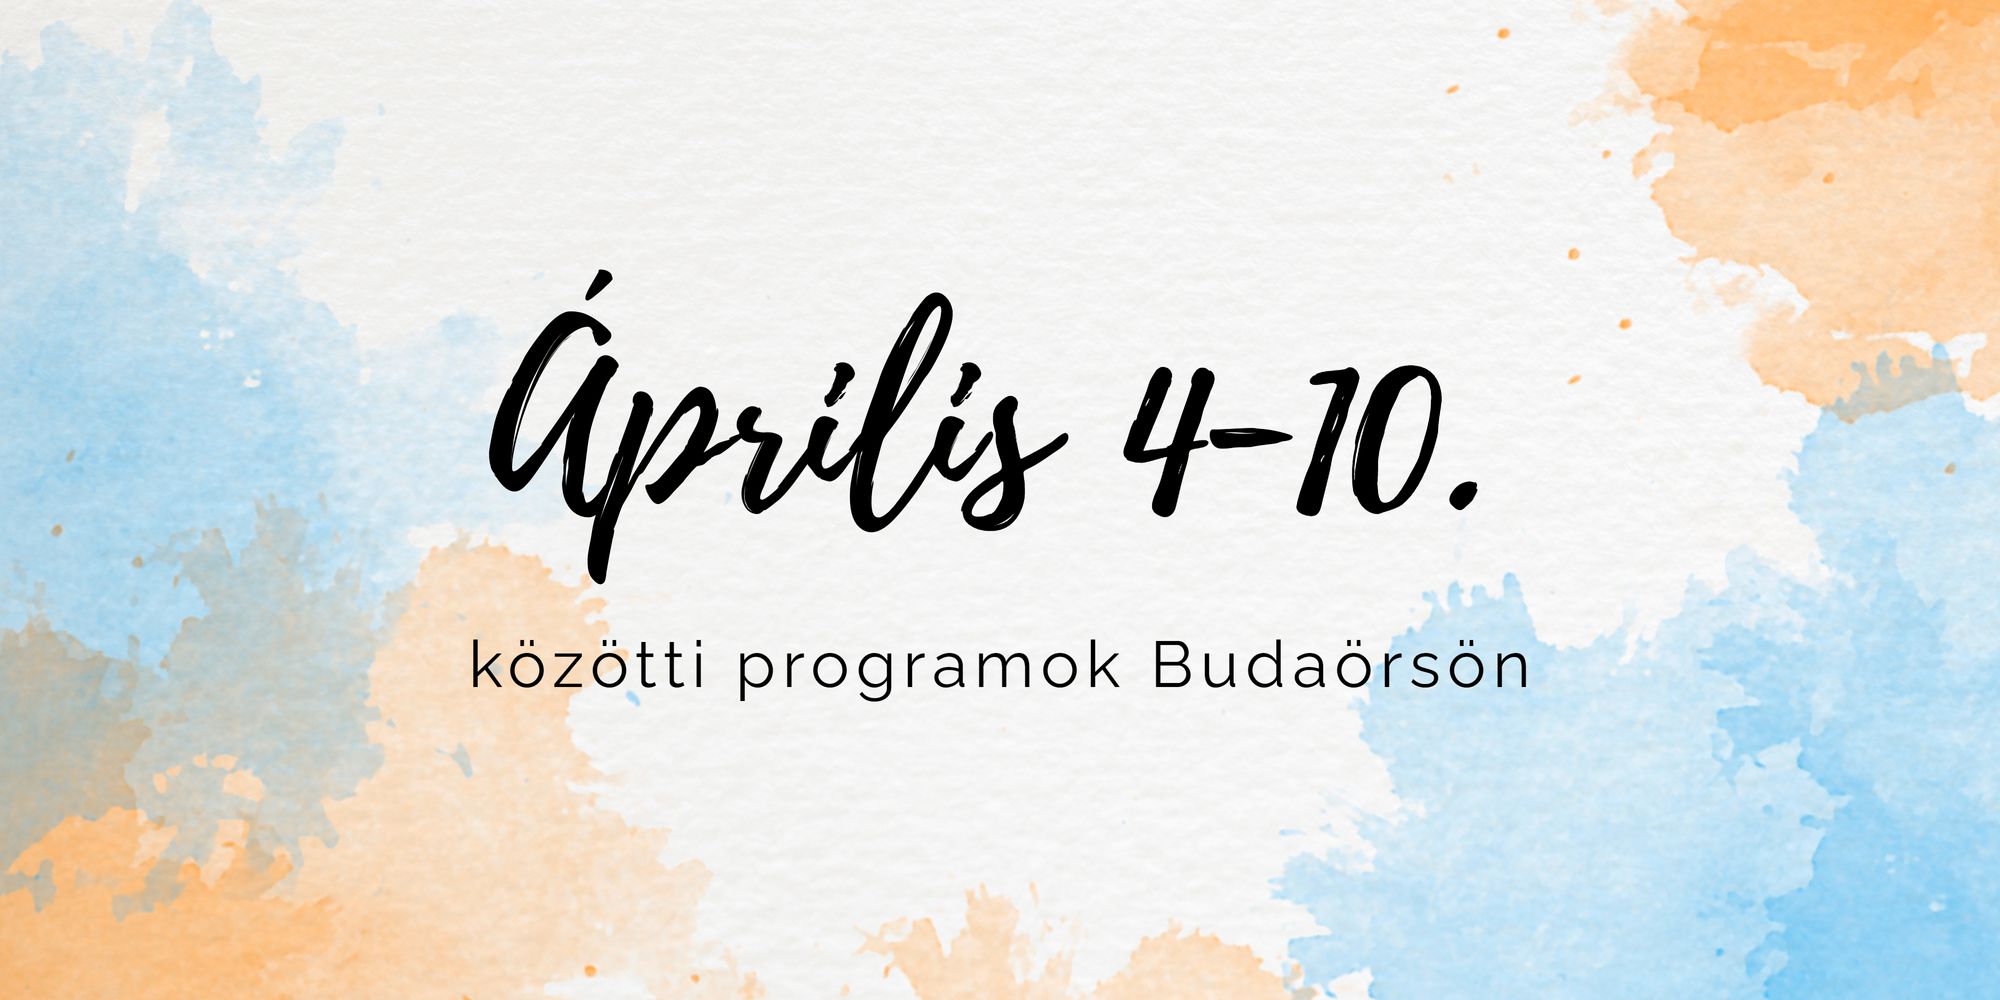 Április 4-10. közötti programok Budaörsön